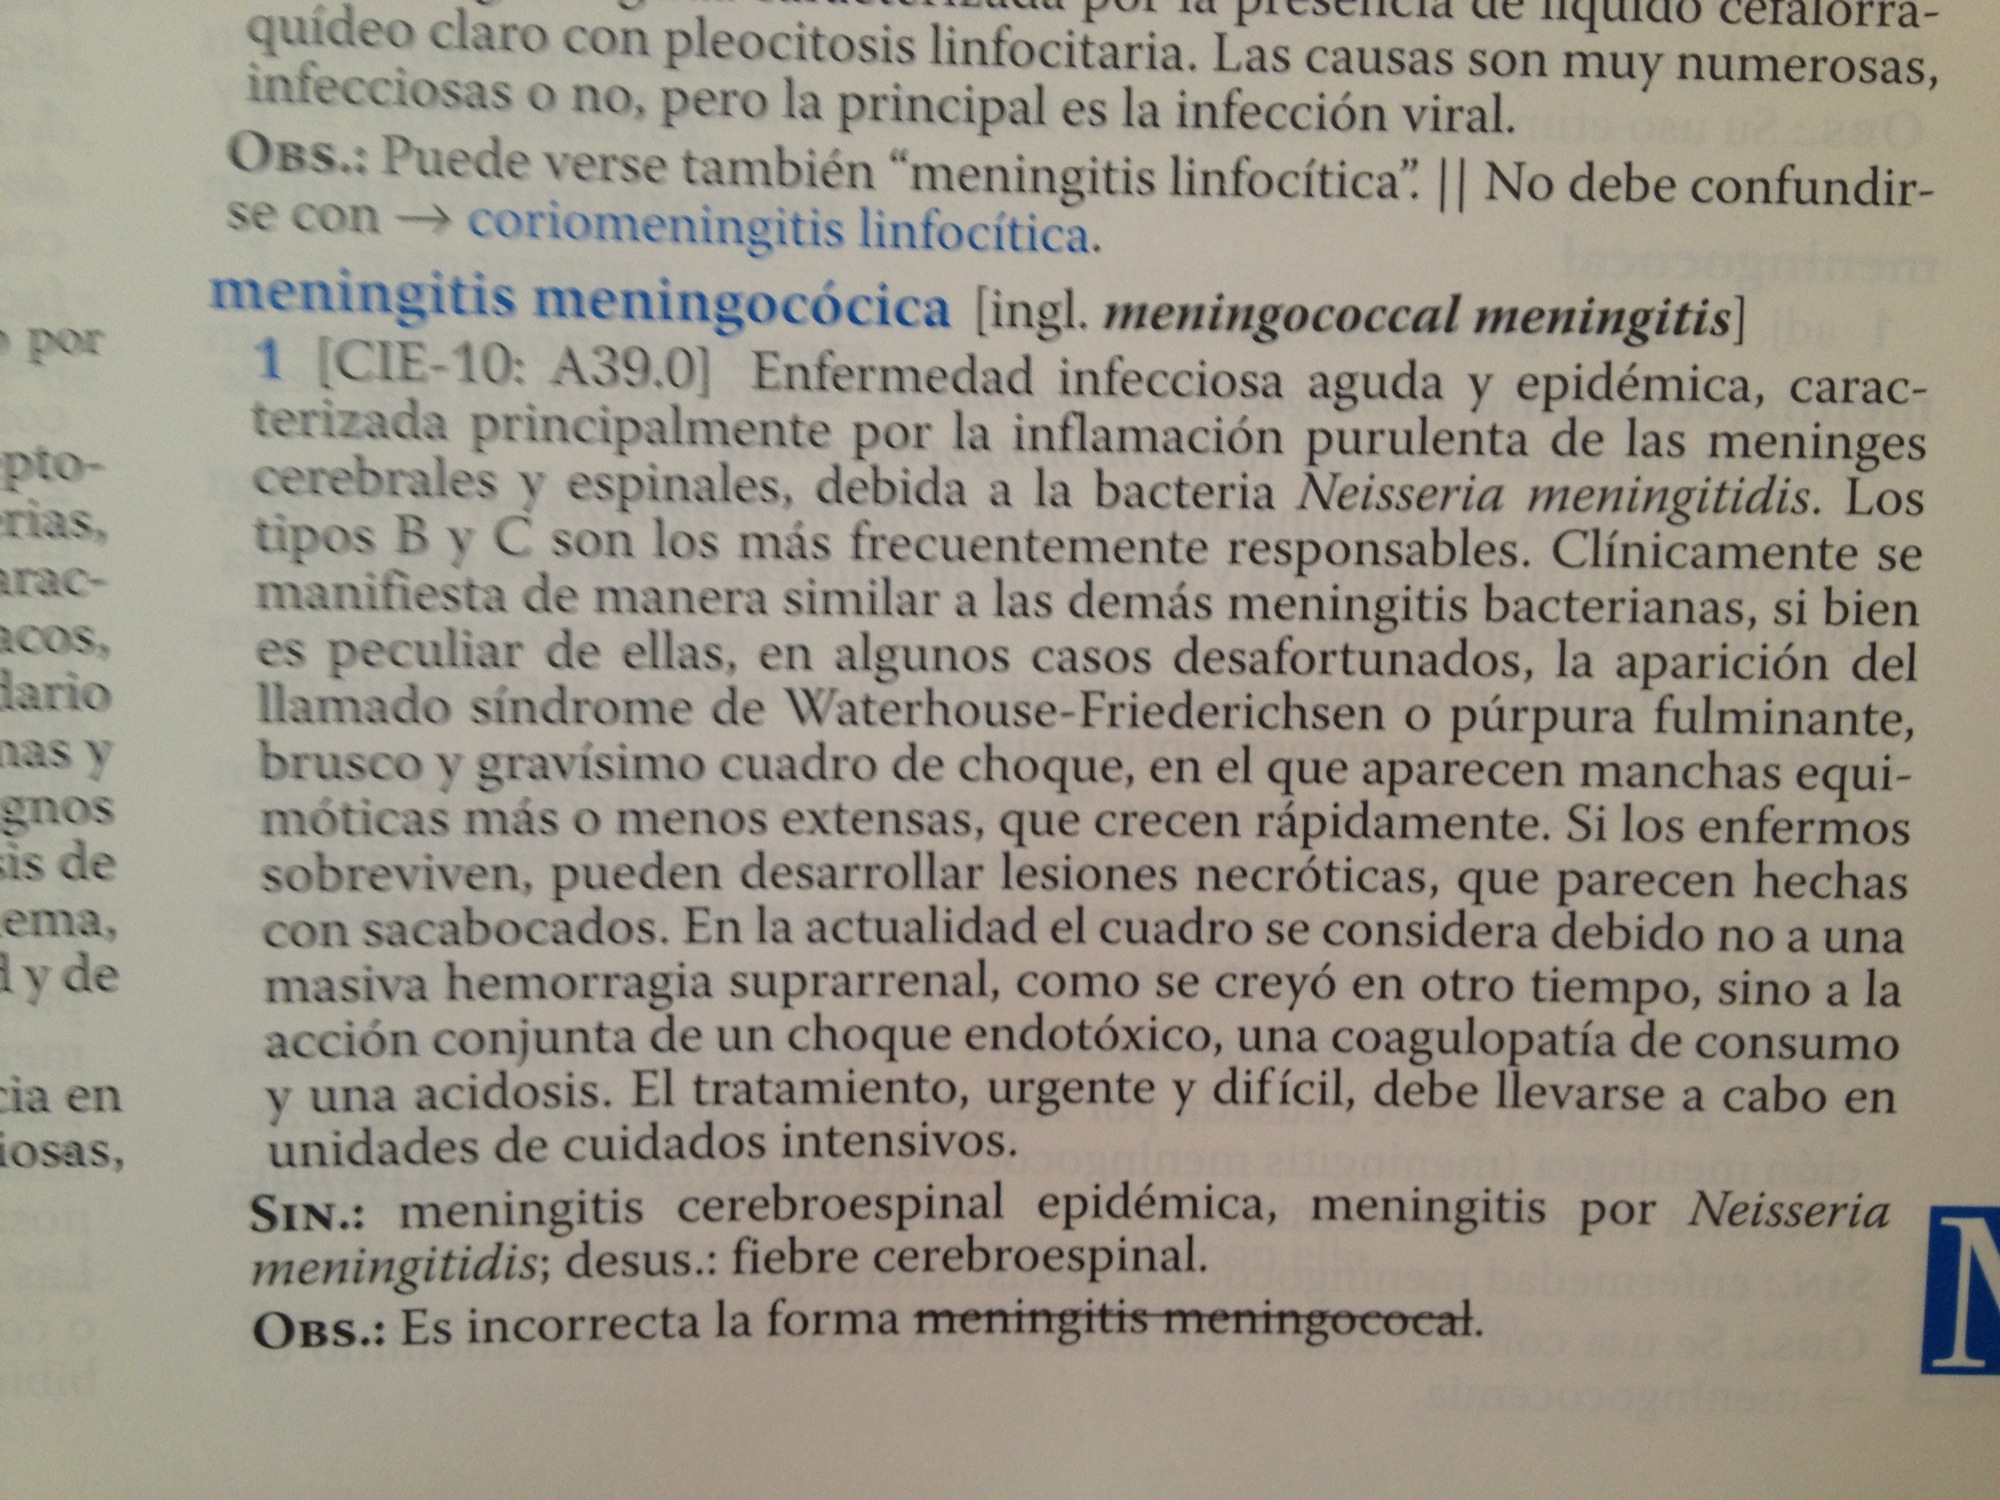 Diccionario de Términos Médicos, entrada meningitis menigocócica.